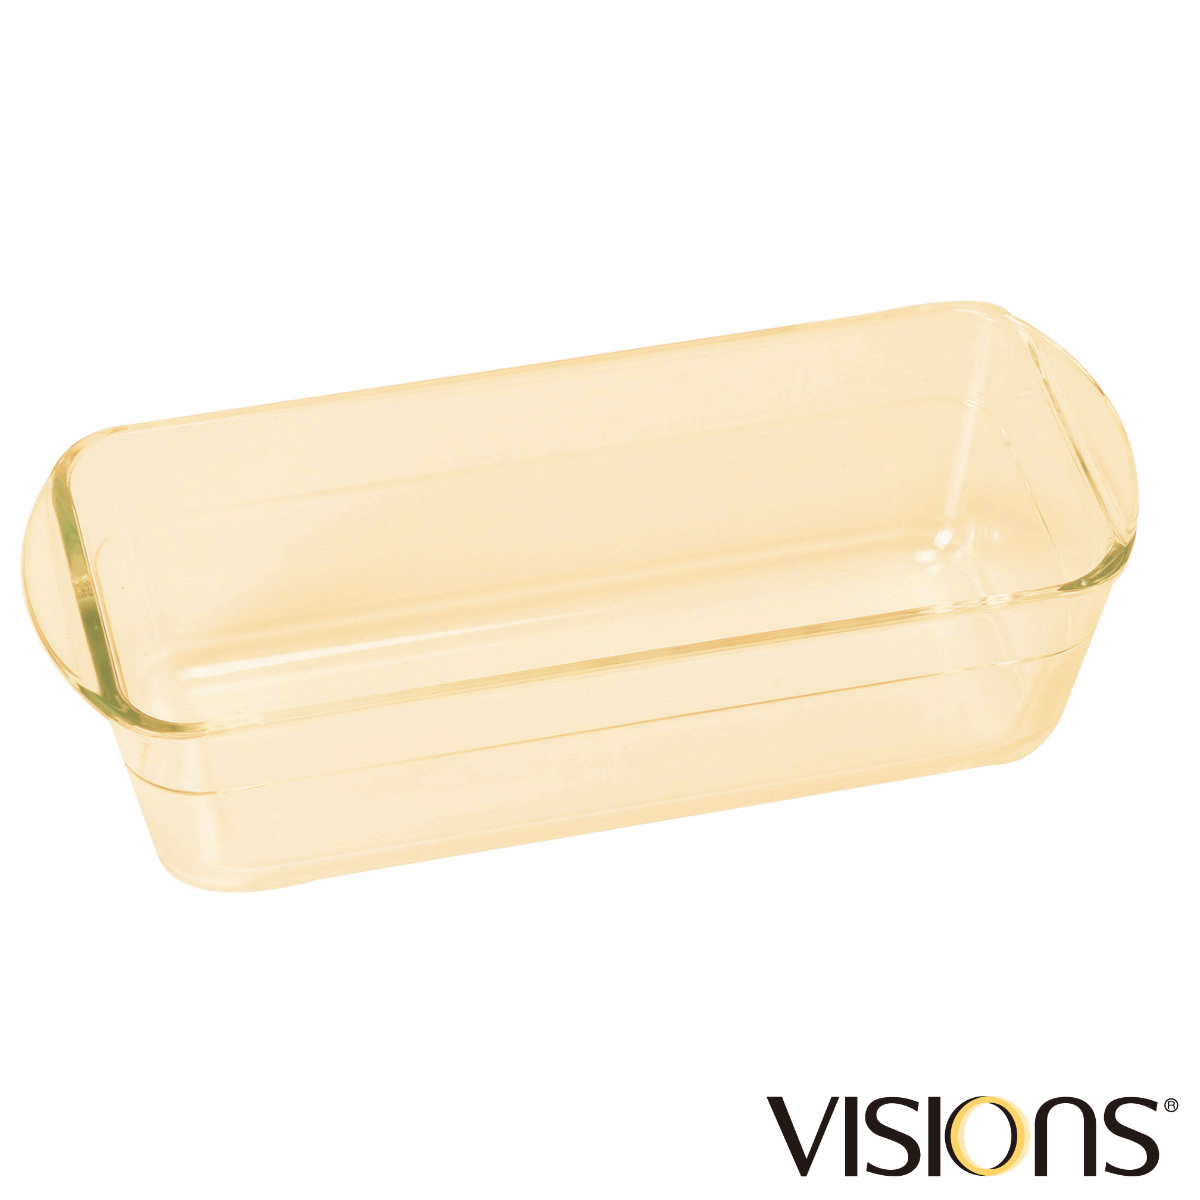 パウンドケーキ型 28cm VISIONS 耐熱ガラス （ 食洗機対応 電子レンジ対応 オーブン対応 耐熱皿 オーブンウェア グラタン ミートローフ